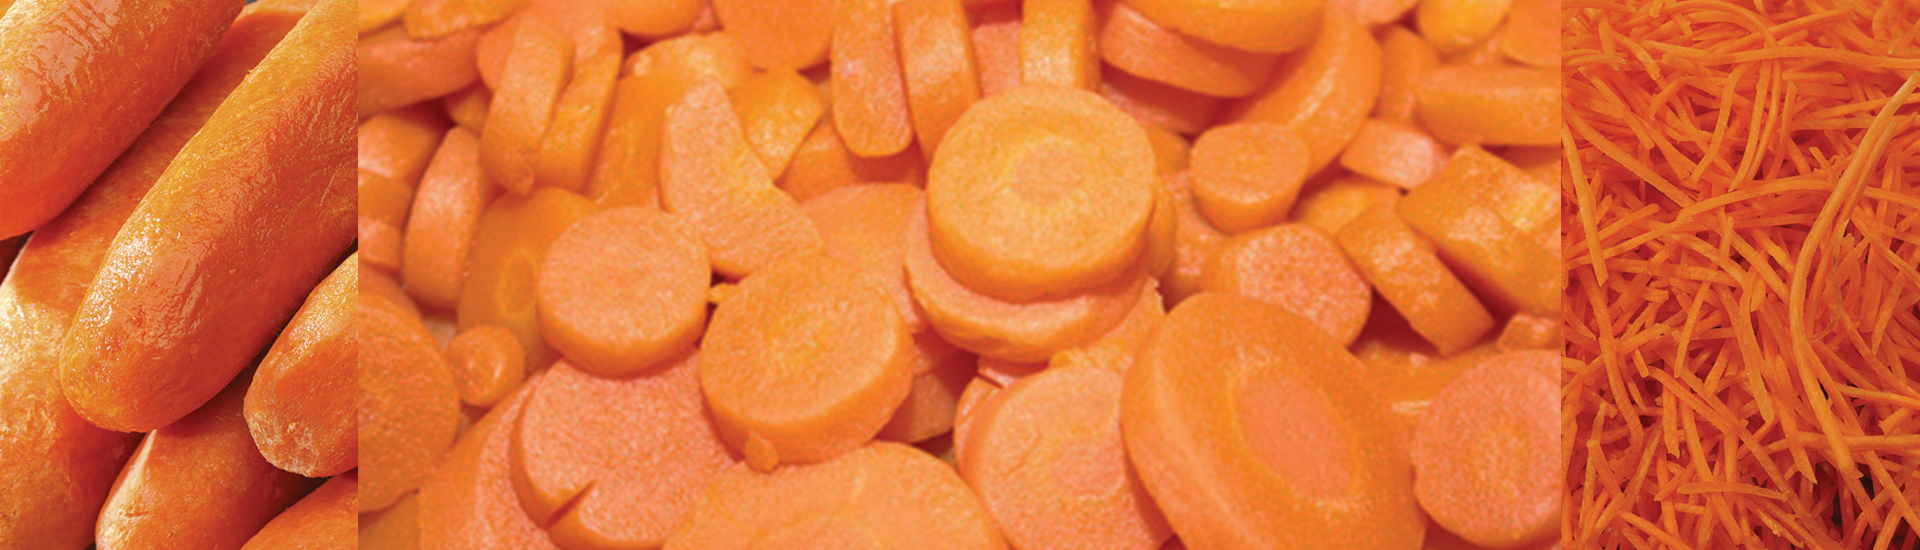 carottes éboutées, carottes pelées, carottes en rondelles, carottes rapées